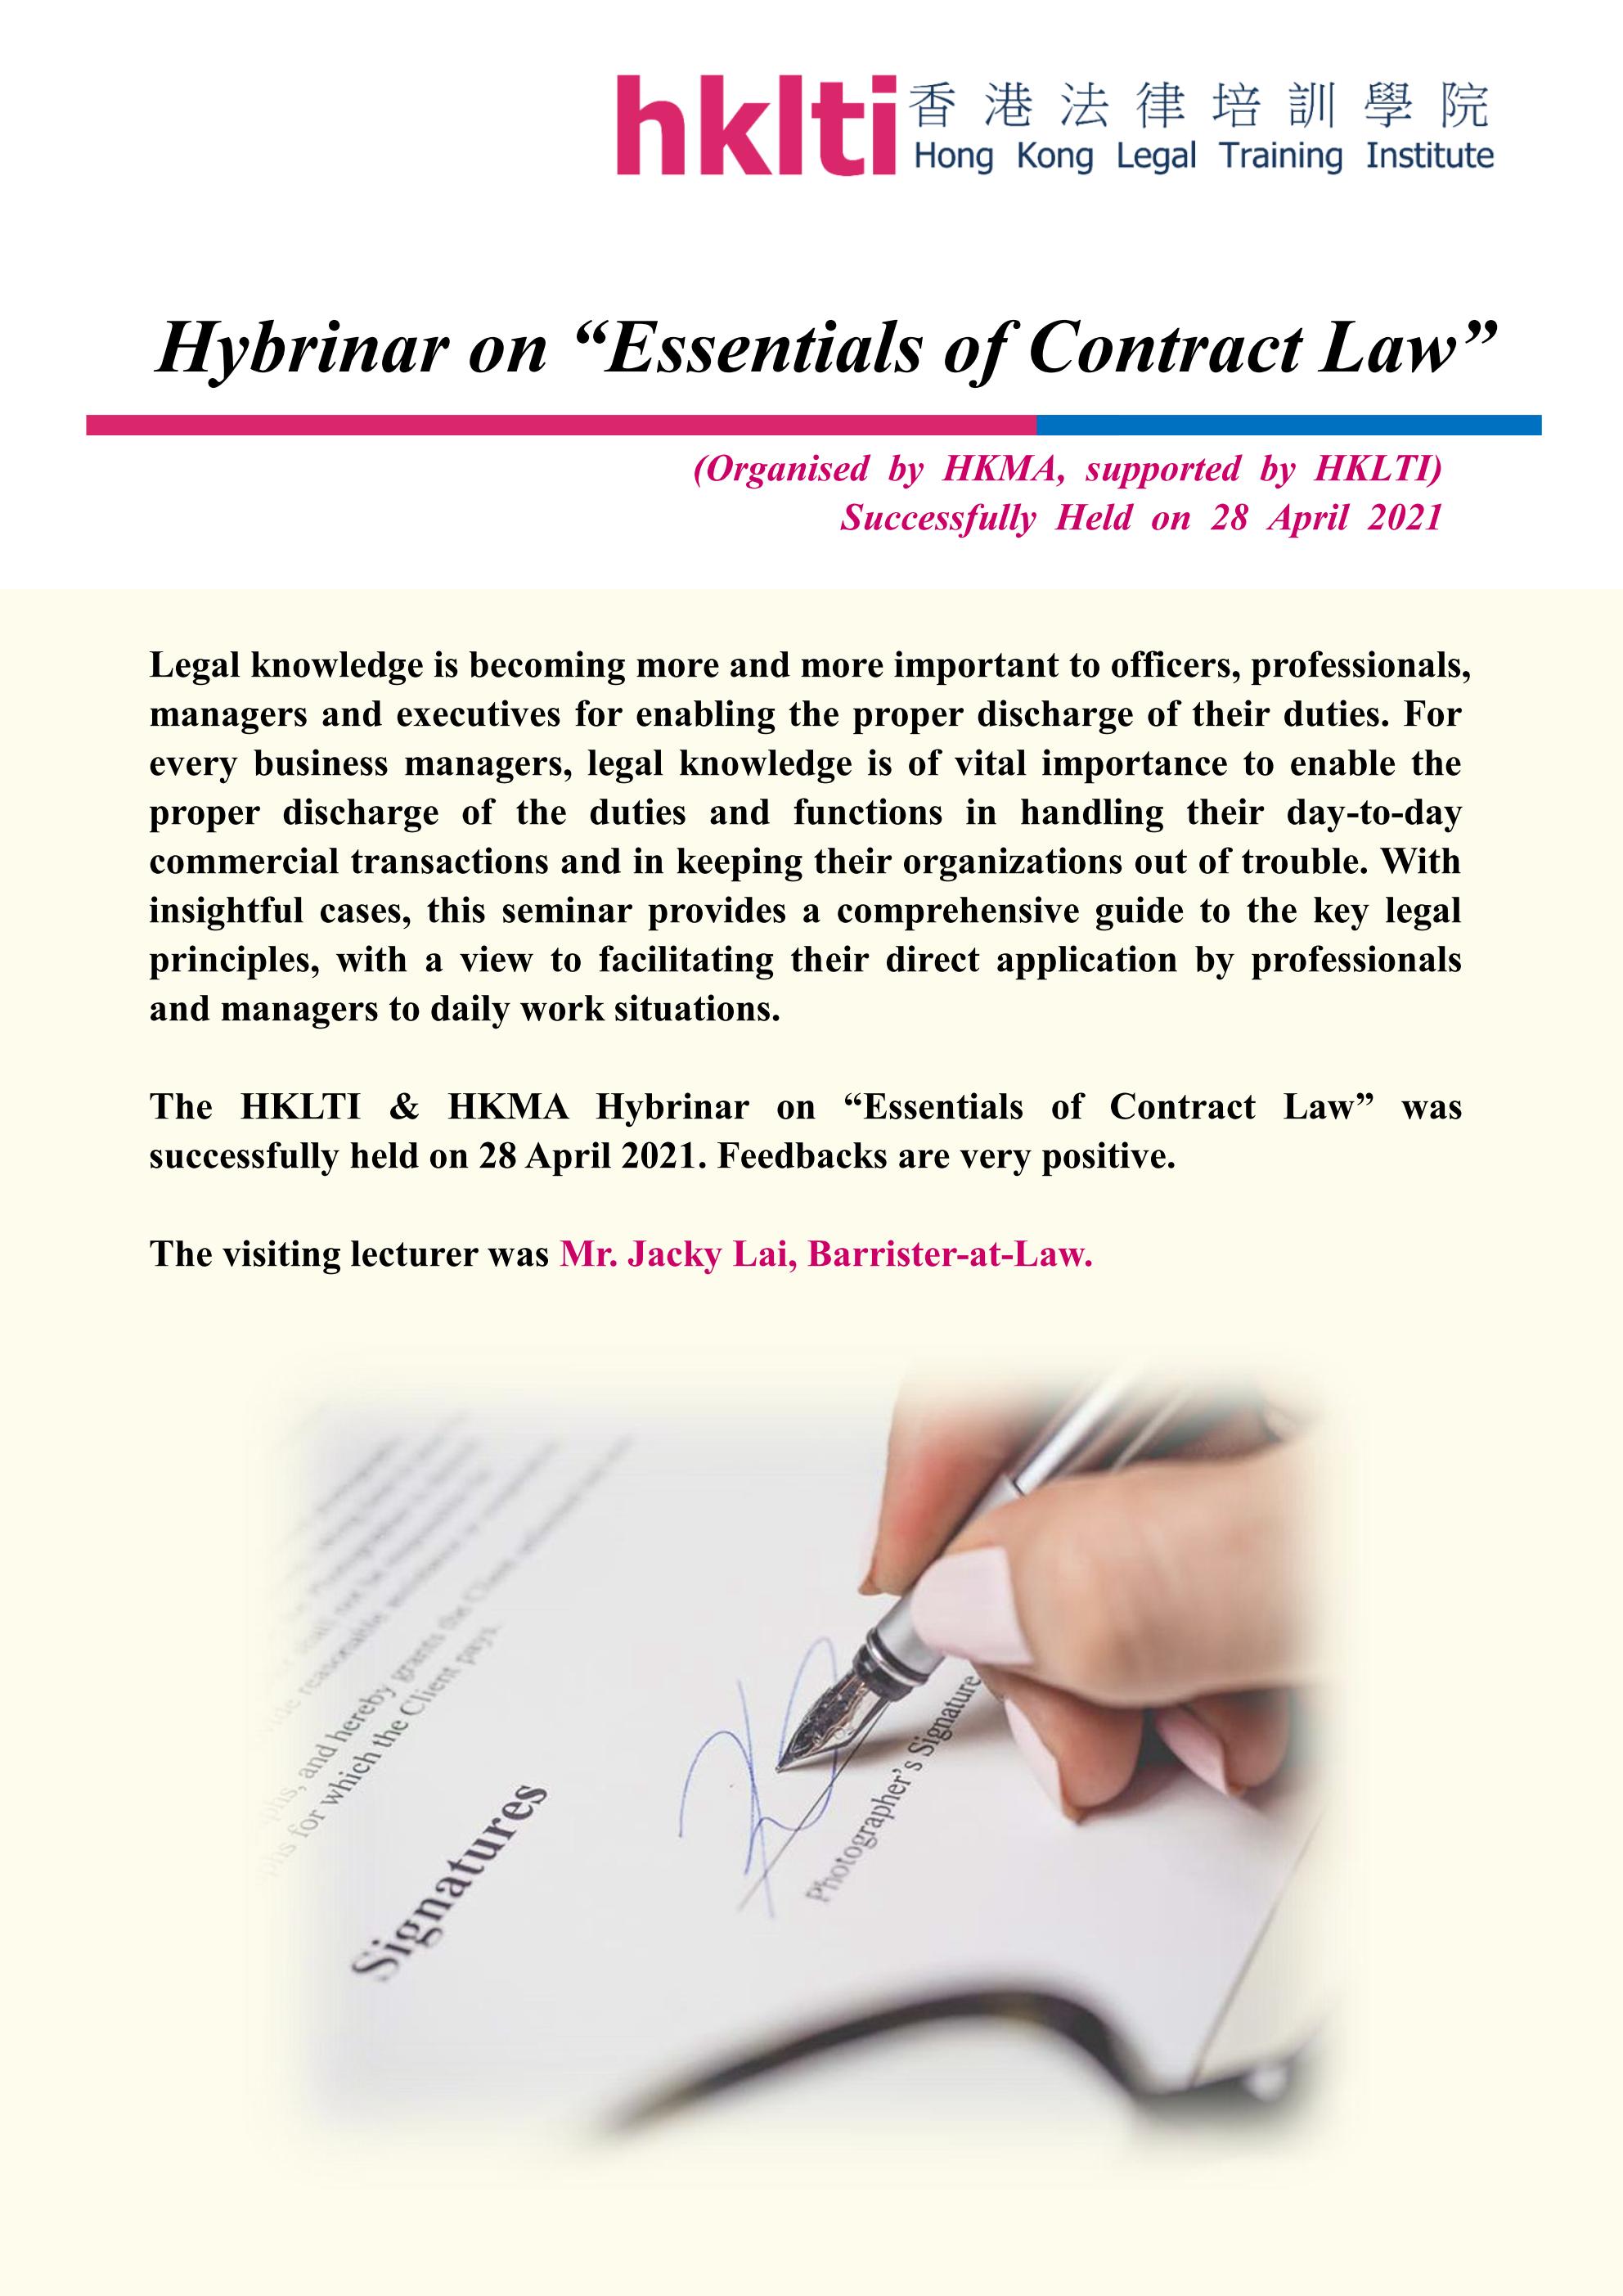 hklti hkma essentials of contract law seminar report 20210428